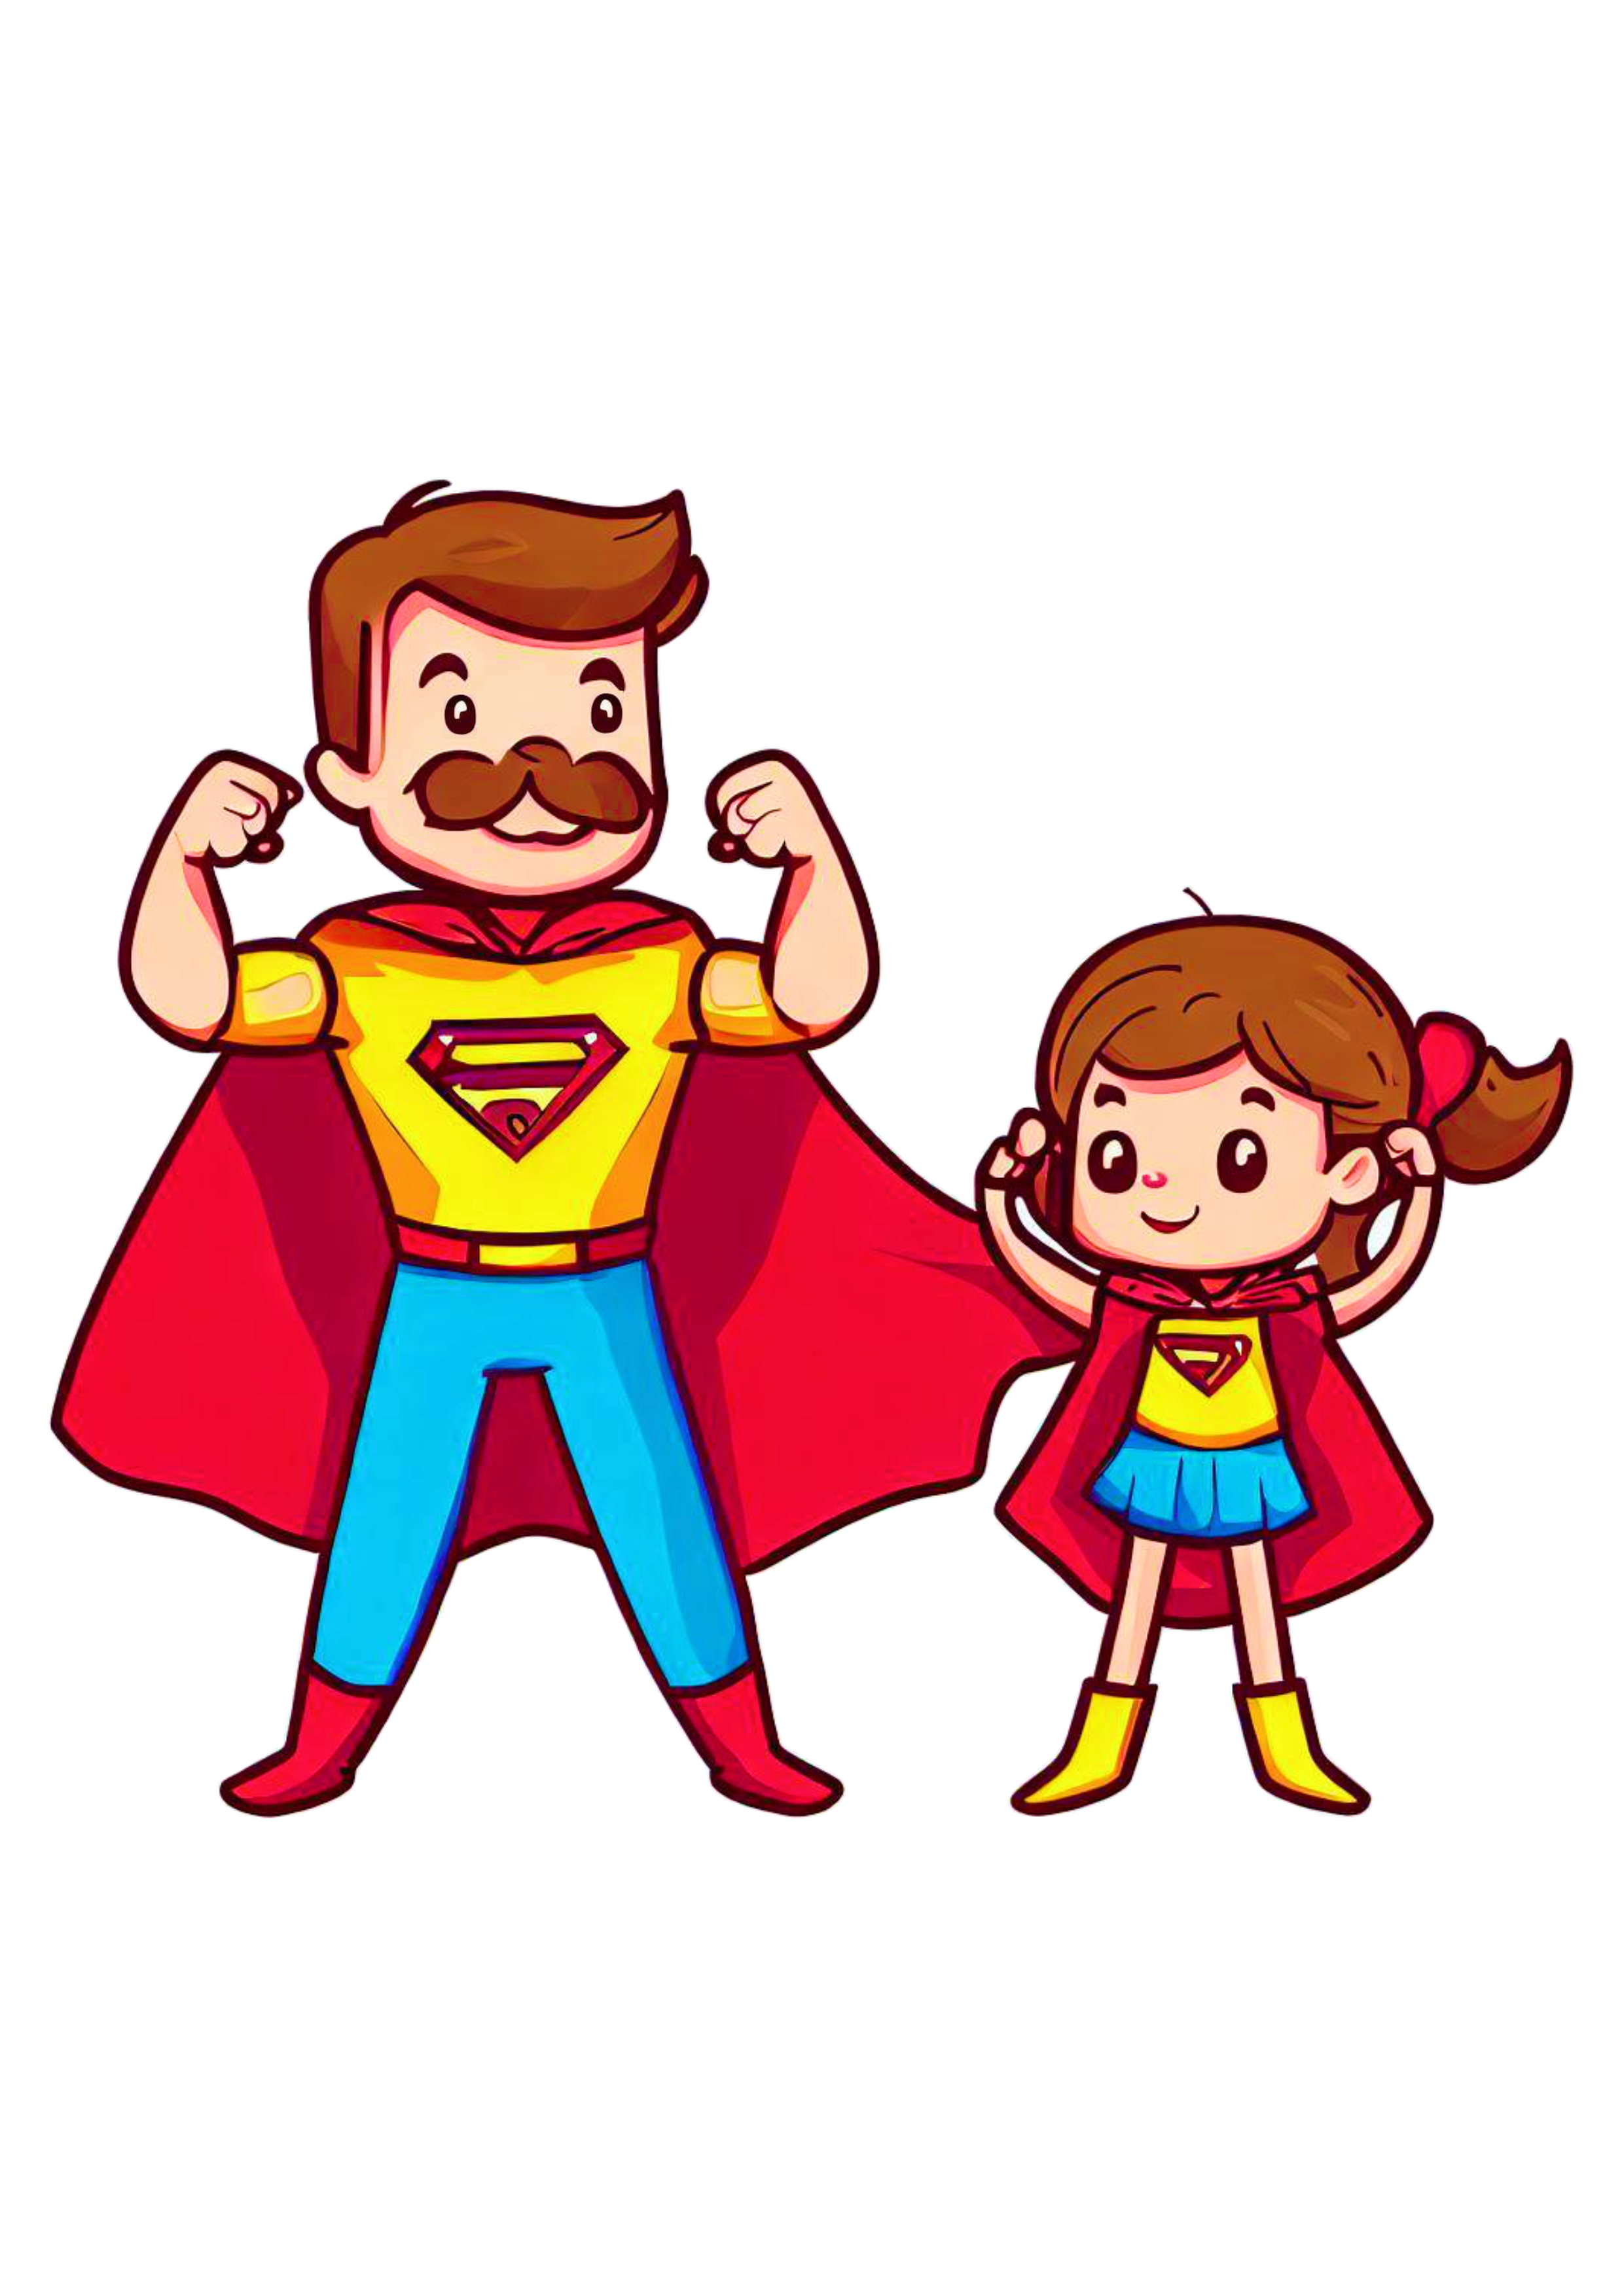 Super pai e super filha desenho animado dia dos pais download pai de menina cartoon fundo transparente png